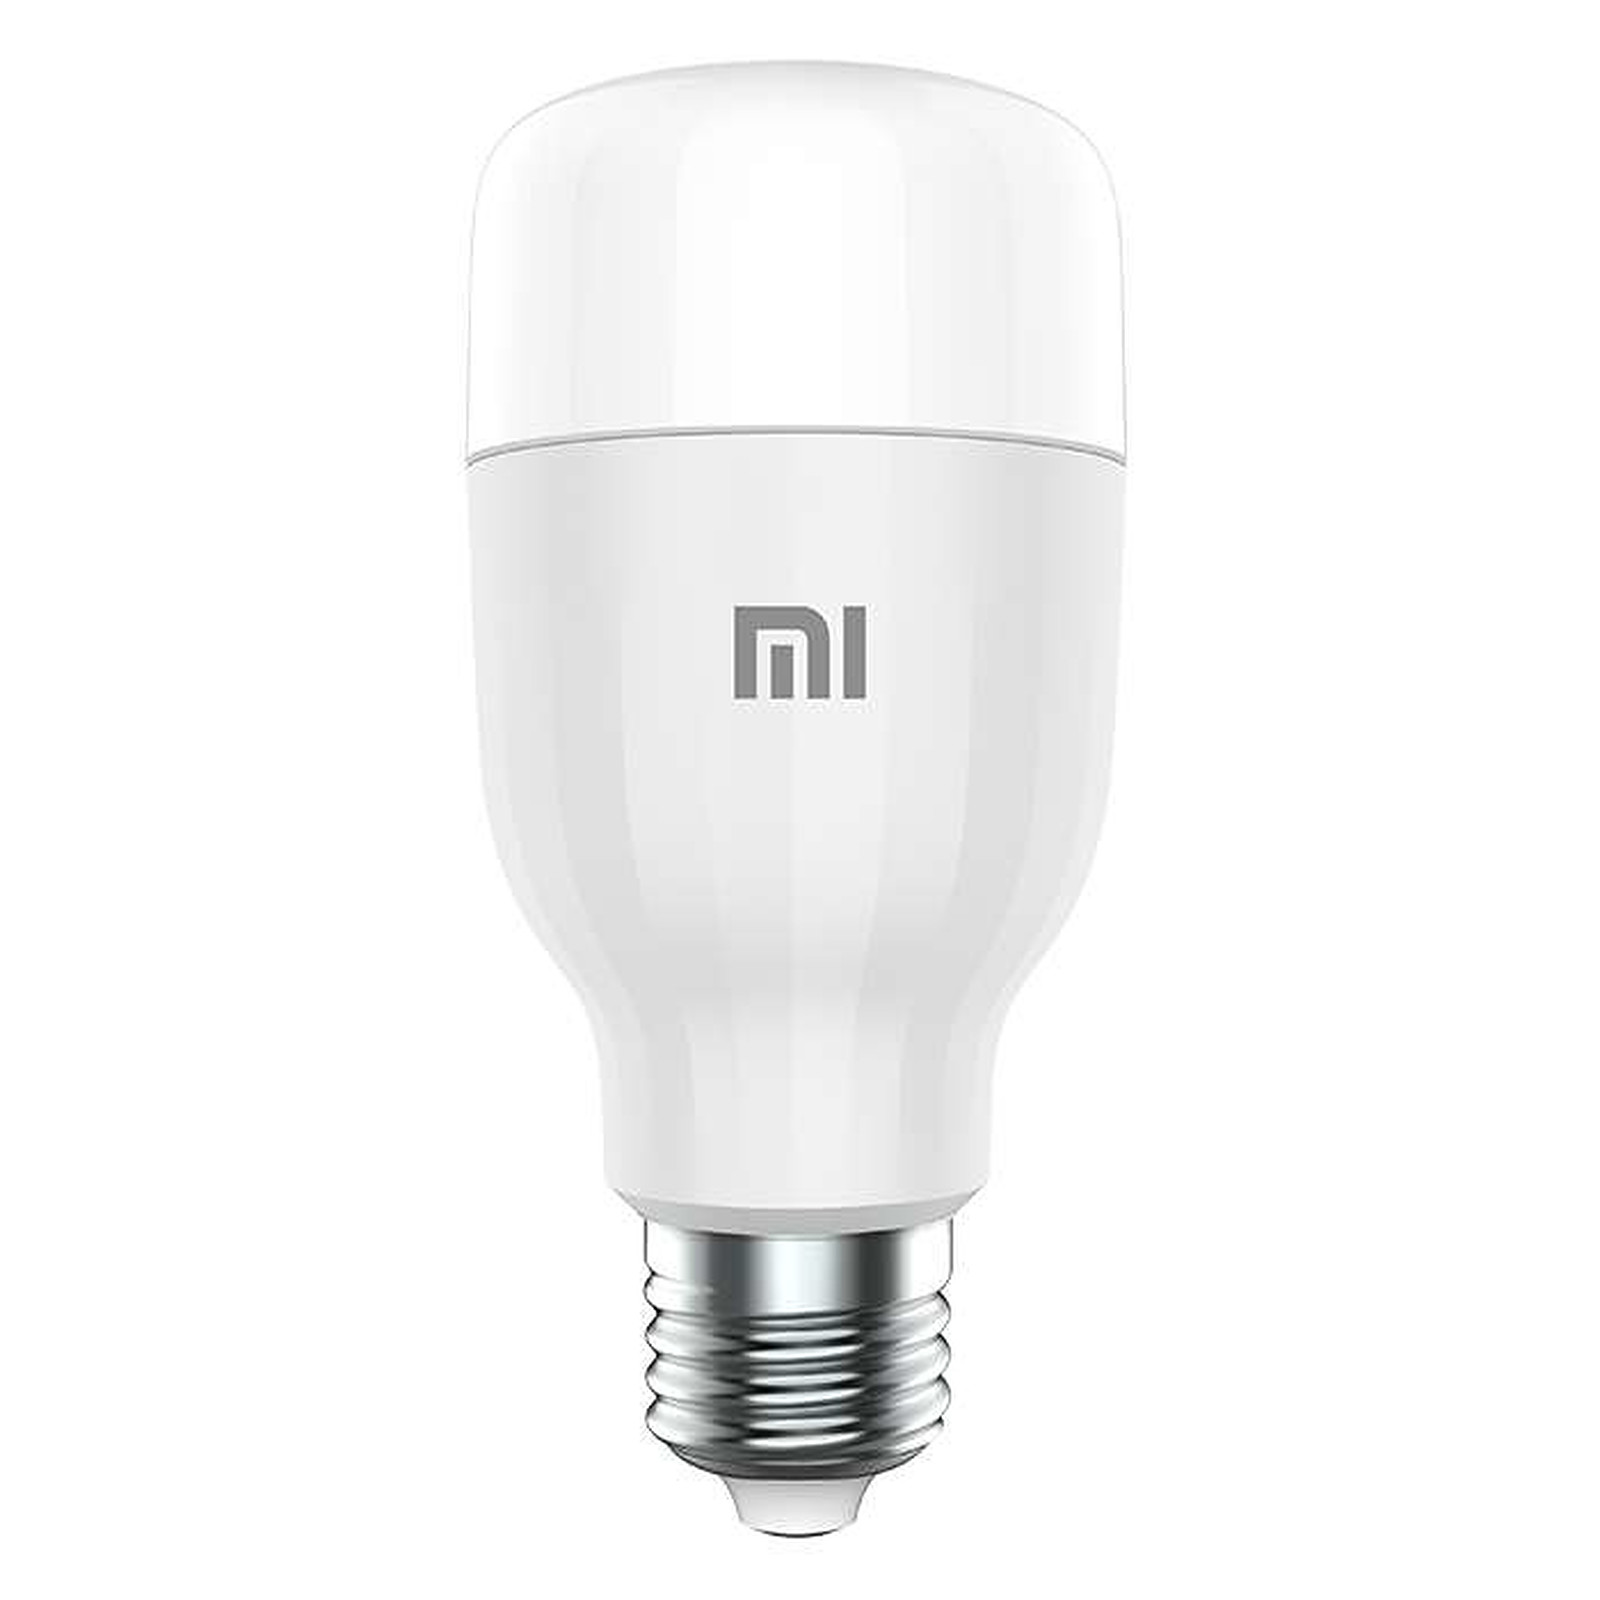 Xiaomi Mi LED Smart Bulb (Blanc et Couleur) - Ampoule connectee Xiaomi